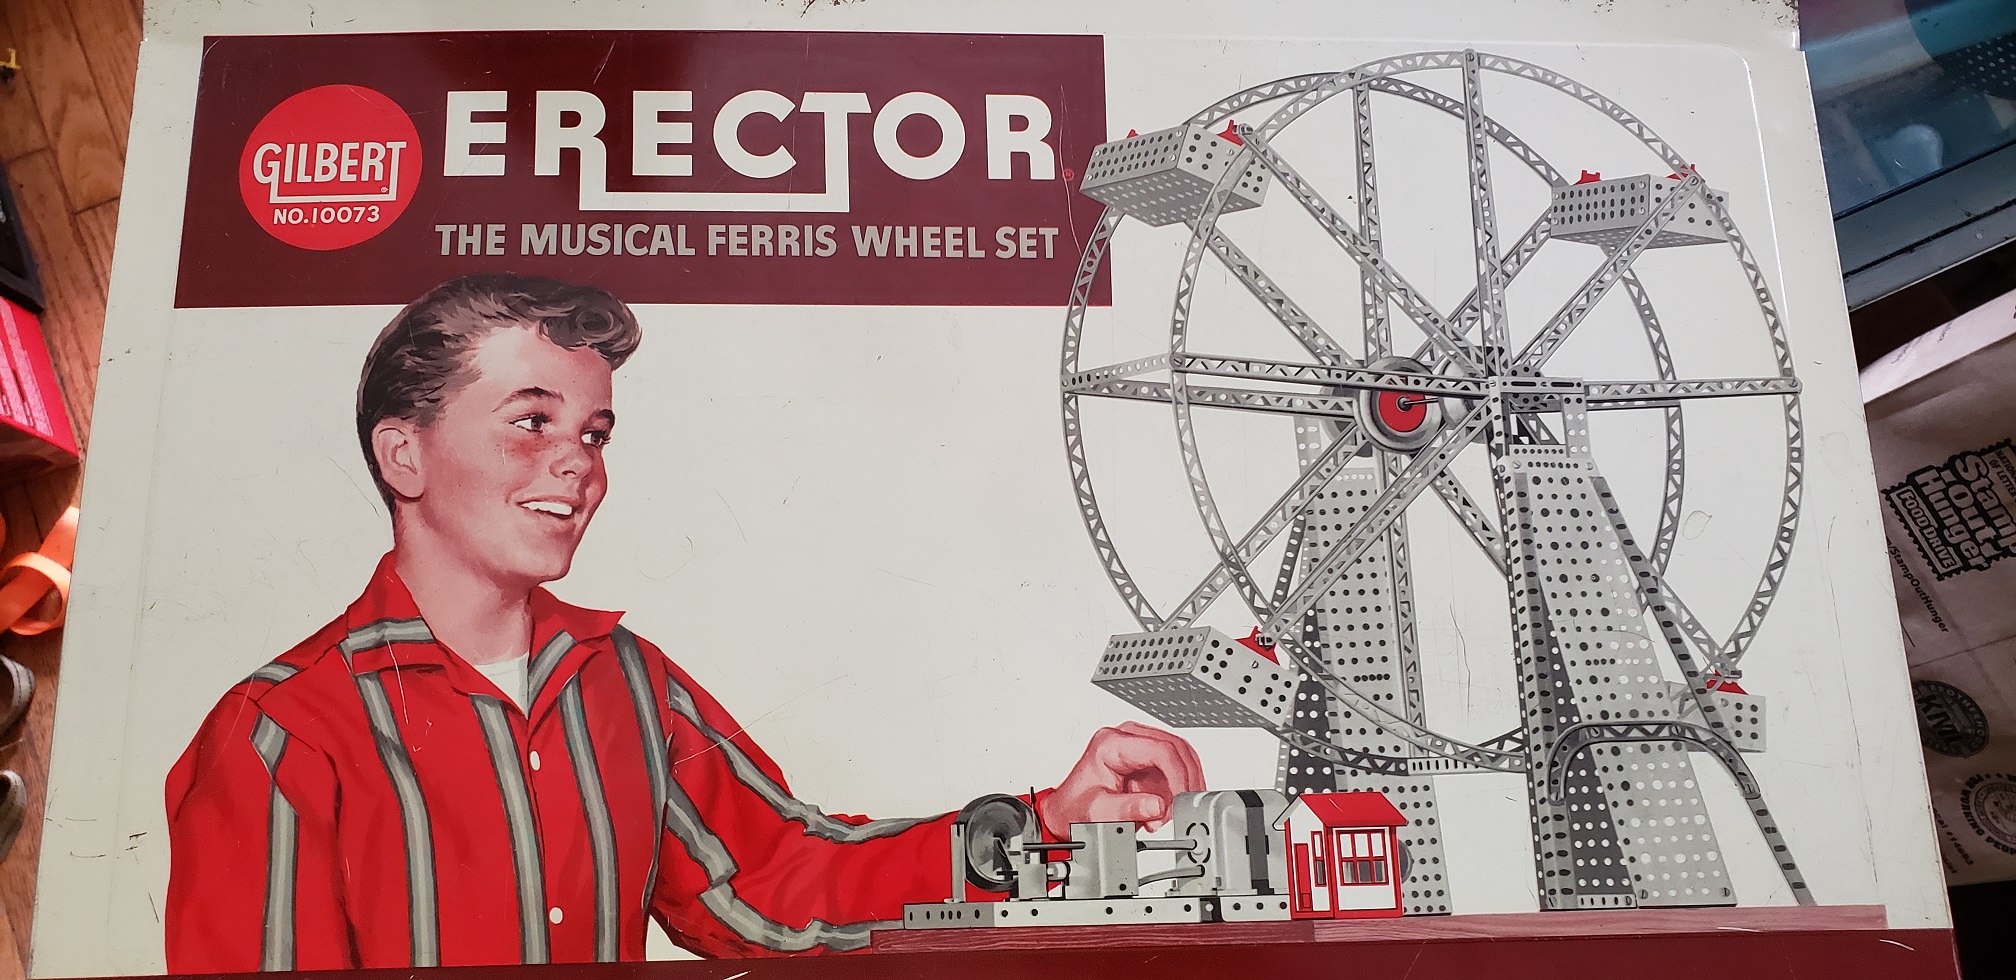 Erector Ferris Wheel Set